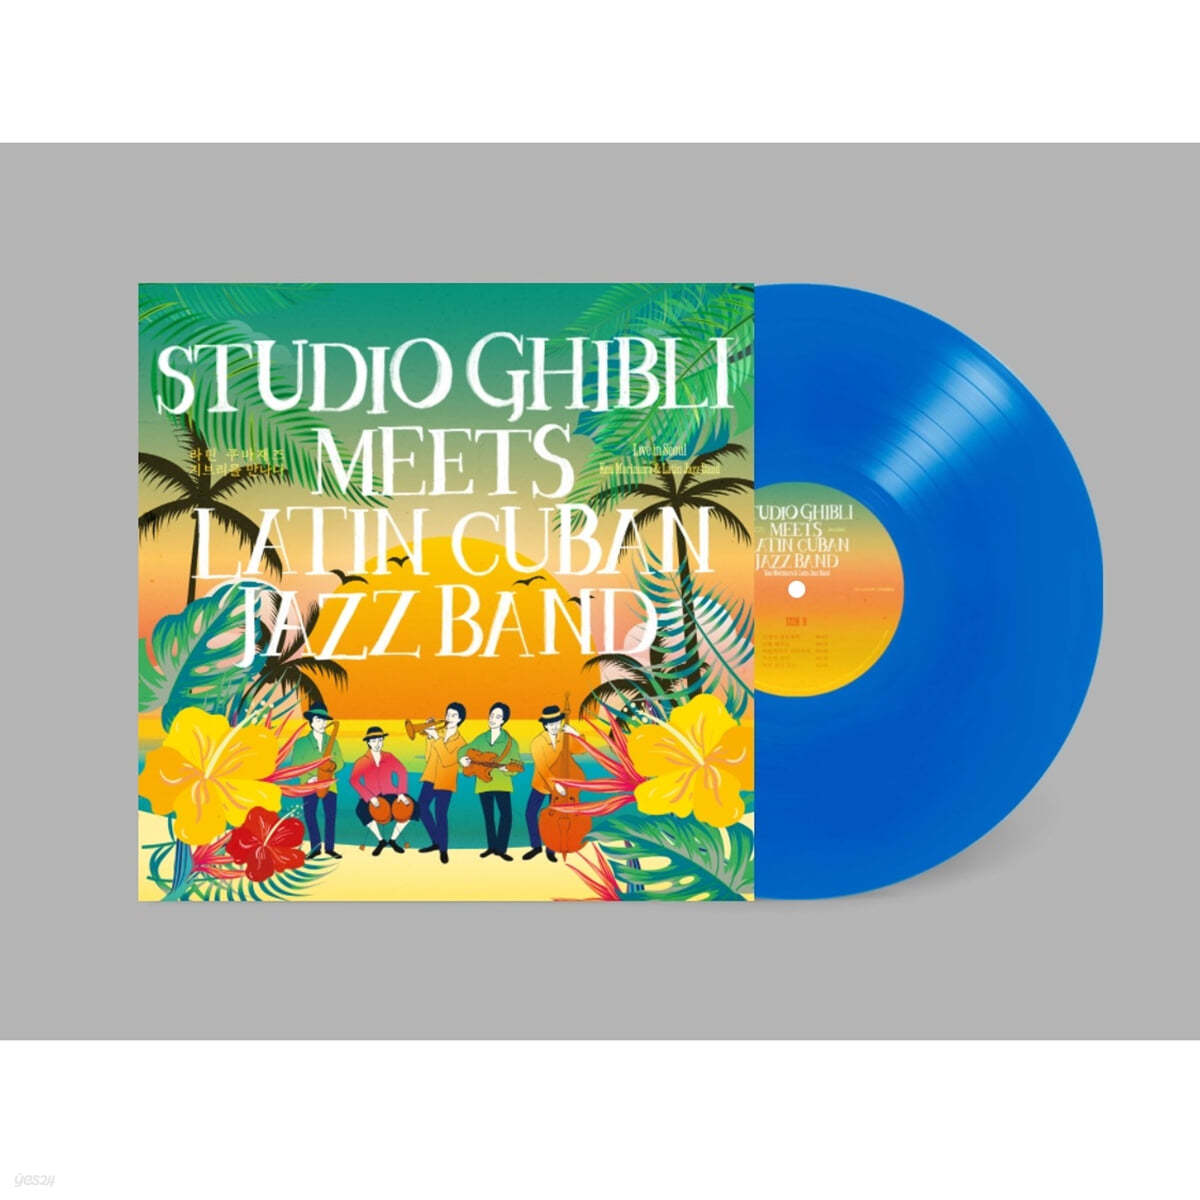 라틴쿠바 재즈 지브리를 만나다 (Studio Ghibli meets Latin Cuban Jazz Band) (Live in Seoul) [블루 컬러 LP] 